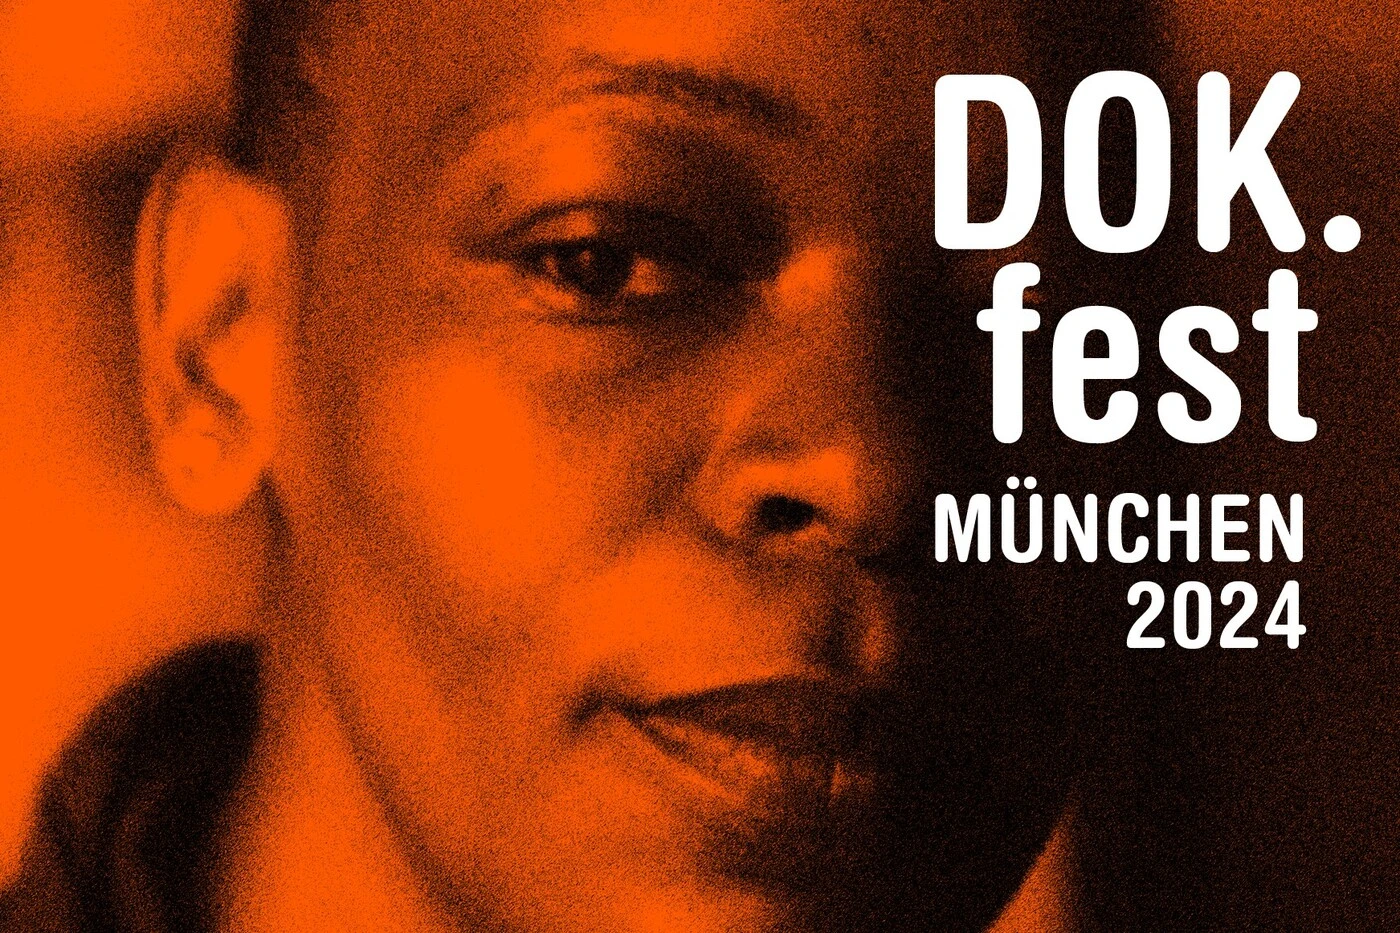 Plakatmotiv des DOK.fest München 2024, Großaufnahme eines Jungengesichts, das von orangefarbenen Licht angestrahlt wird, rechts im Bild steht in weißer Schrift: DOK.fest München 2024